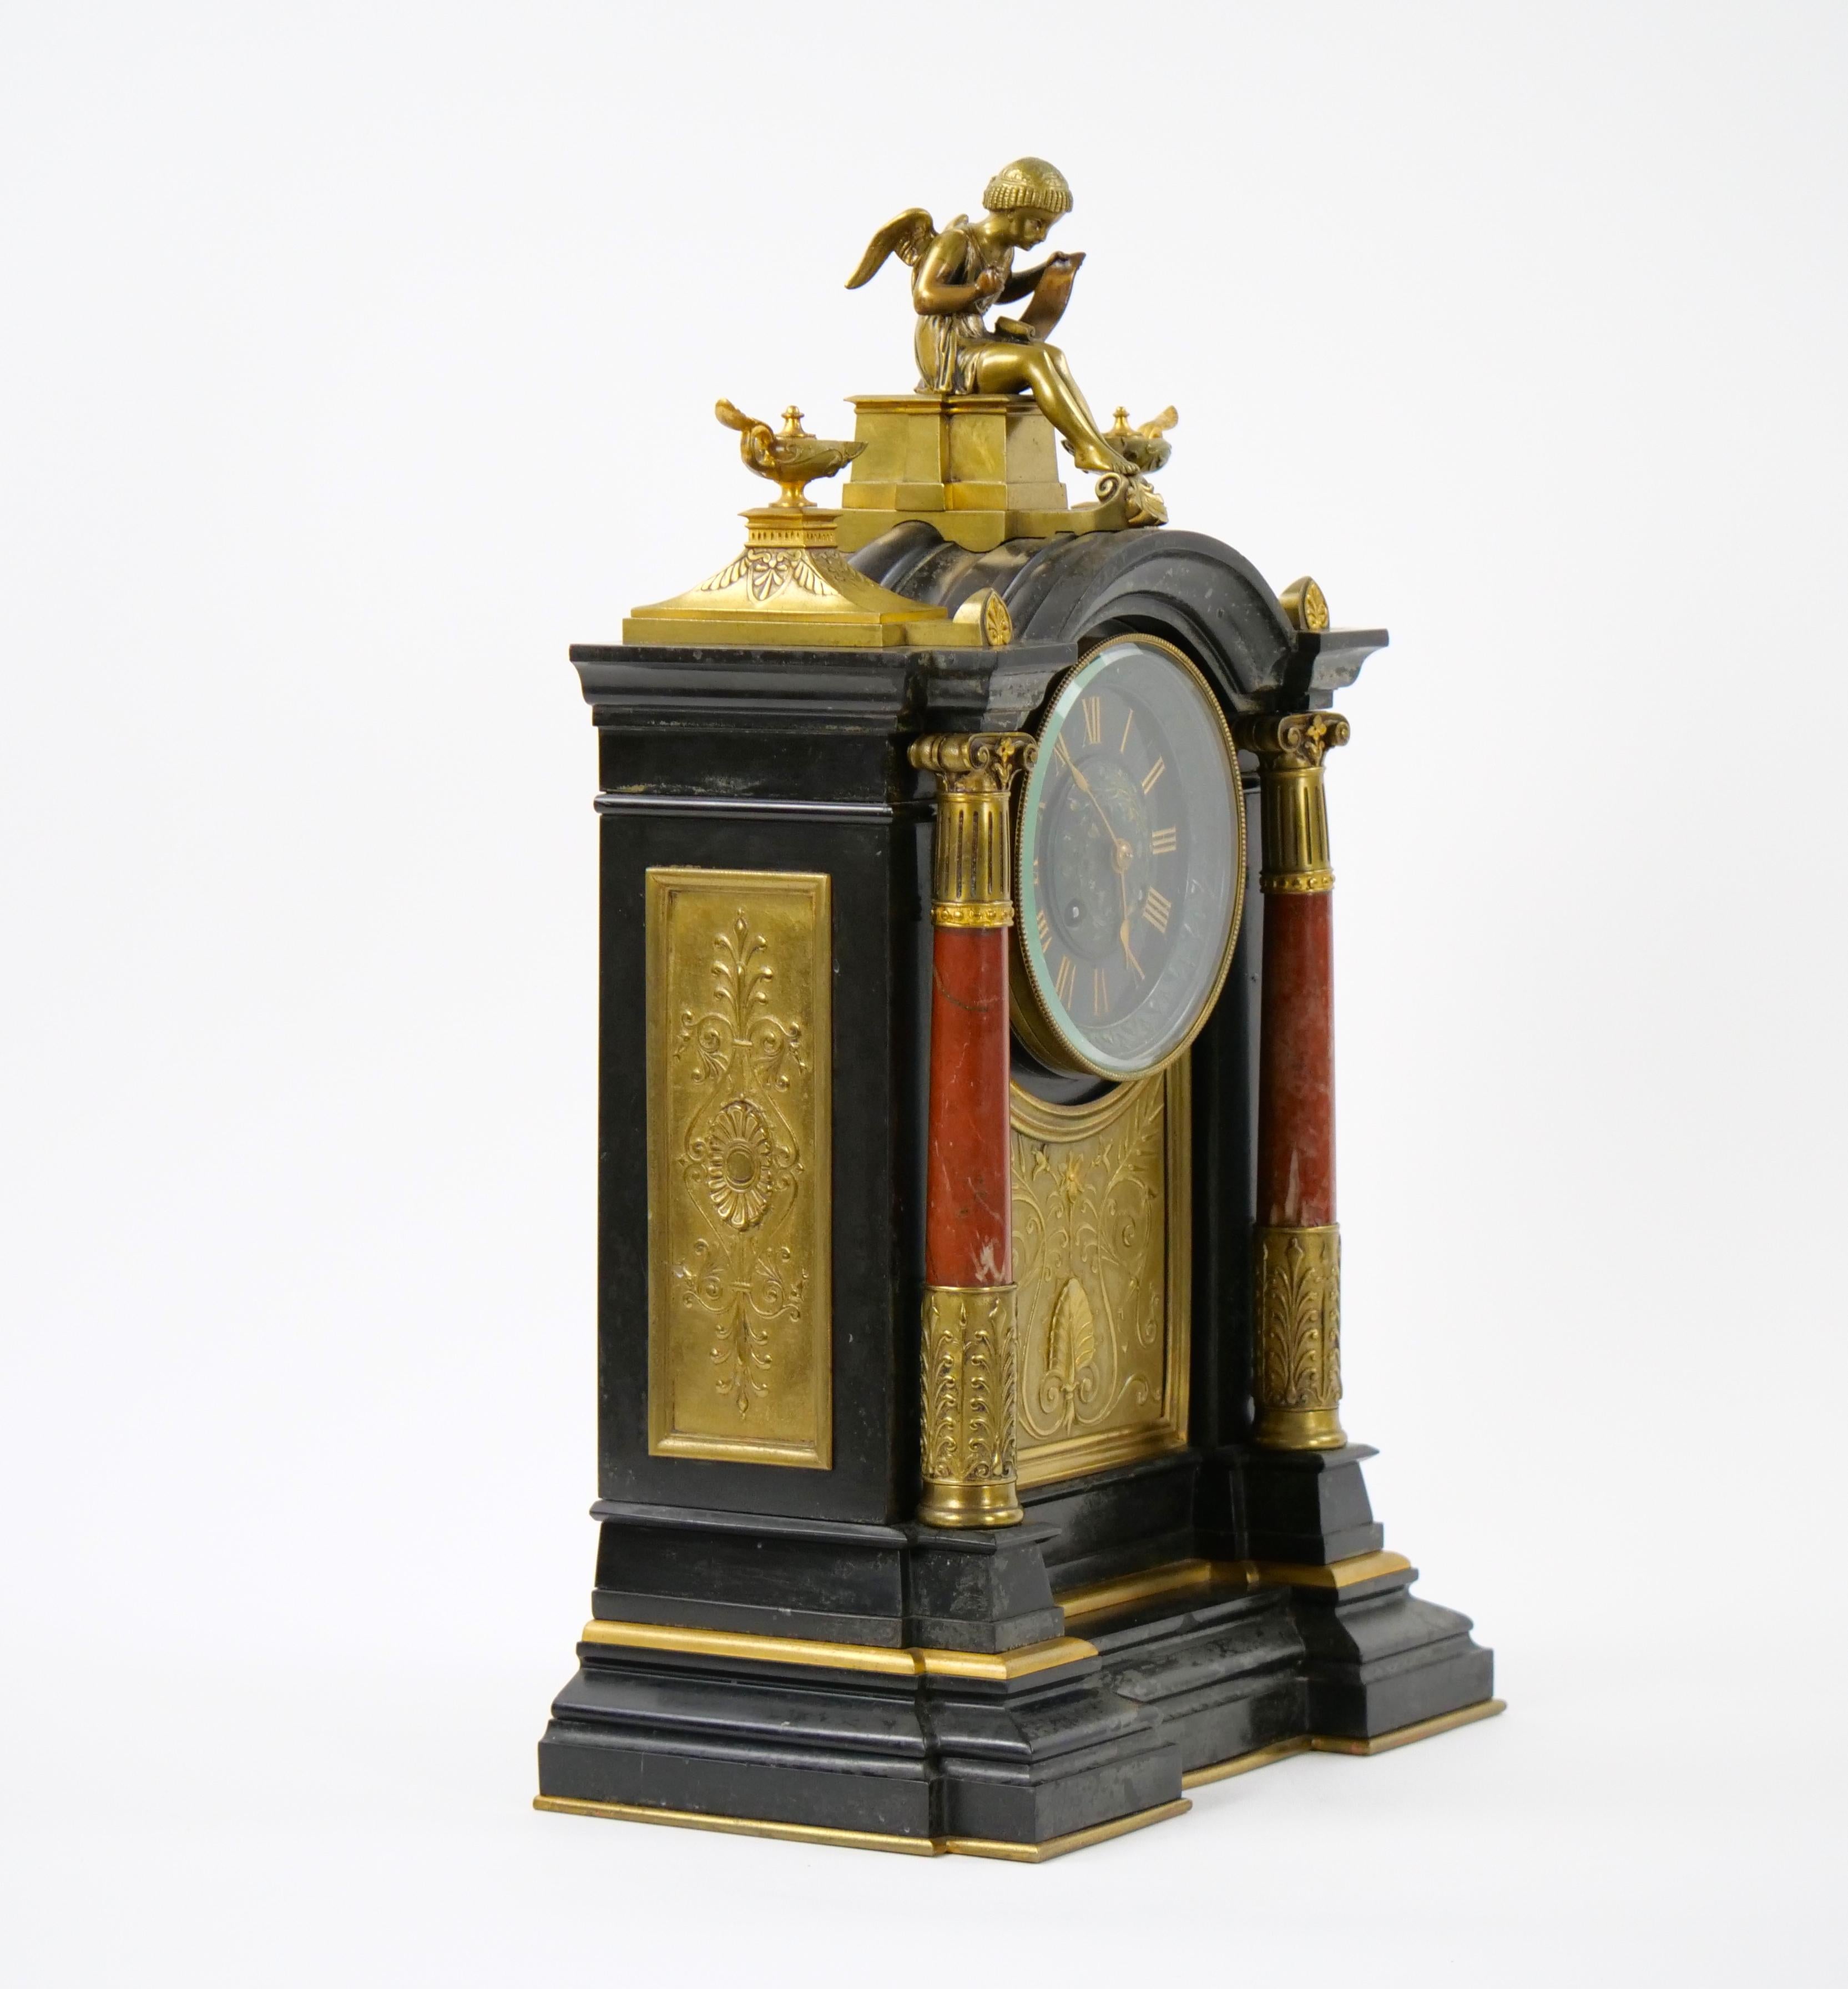 Transportez-vous dans la grandeur du 19ème siècle avec cette exquise horloge de cheminée en marbre et bronze. Véritable chef-d'œuvre d'art et d'artisanat, cette horloge est ornée de détails complexes qui capturent l'essence d'une époque définie par